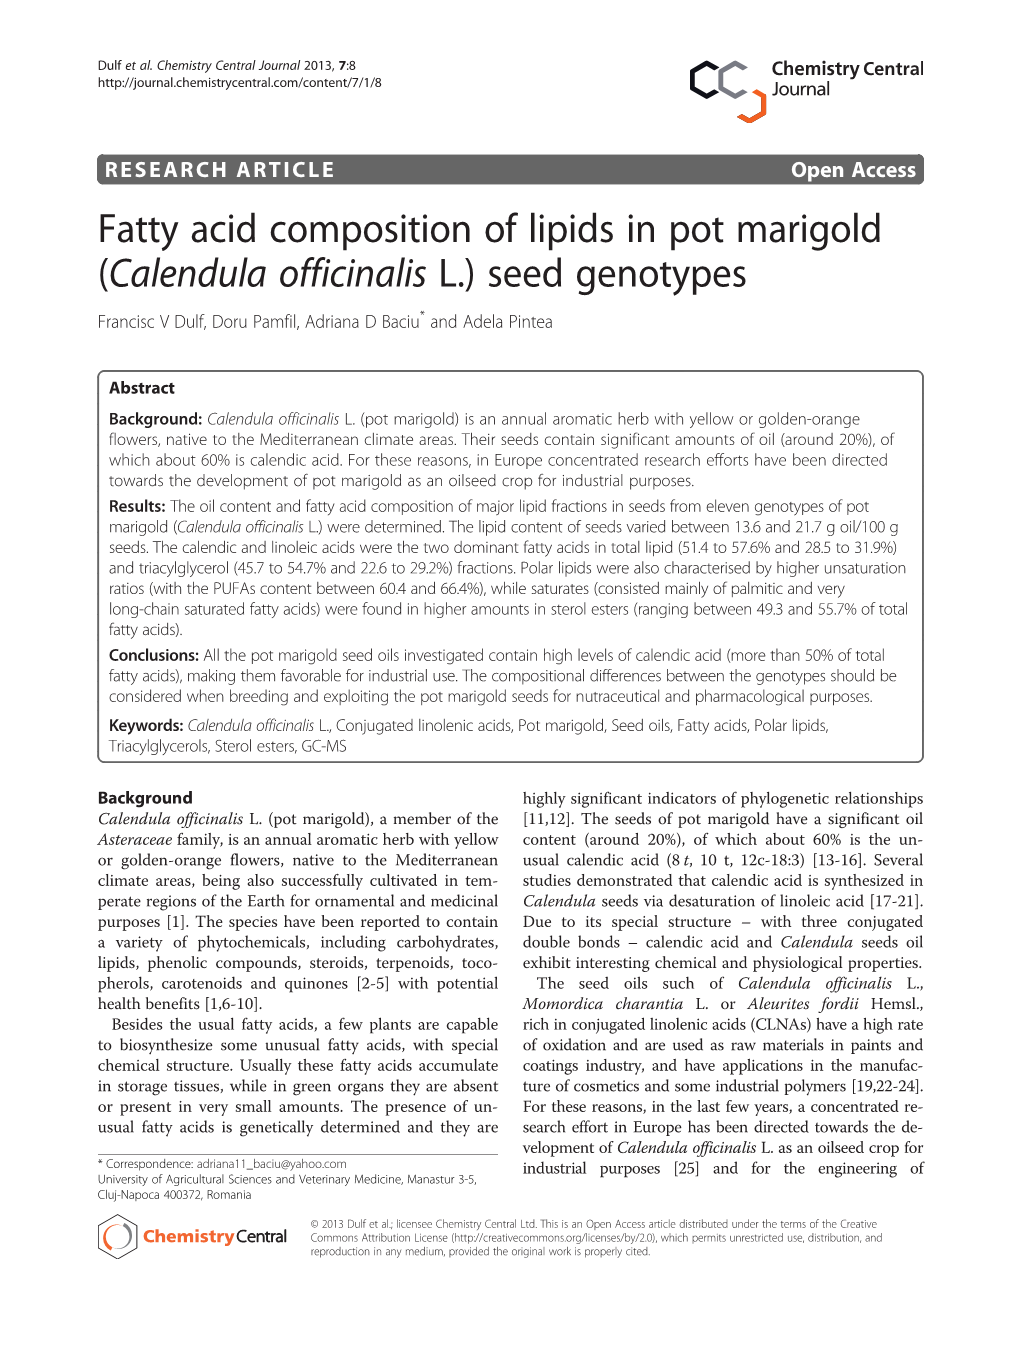 Fatty Acid Composition of Lipids in Pot Marigold (Calendula Officinalis L.) Seed Genotypes Francisc V Dulf, Doru Pamfil, Adriana D Baciu* and Adela Pintea